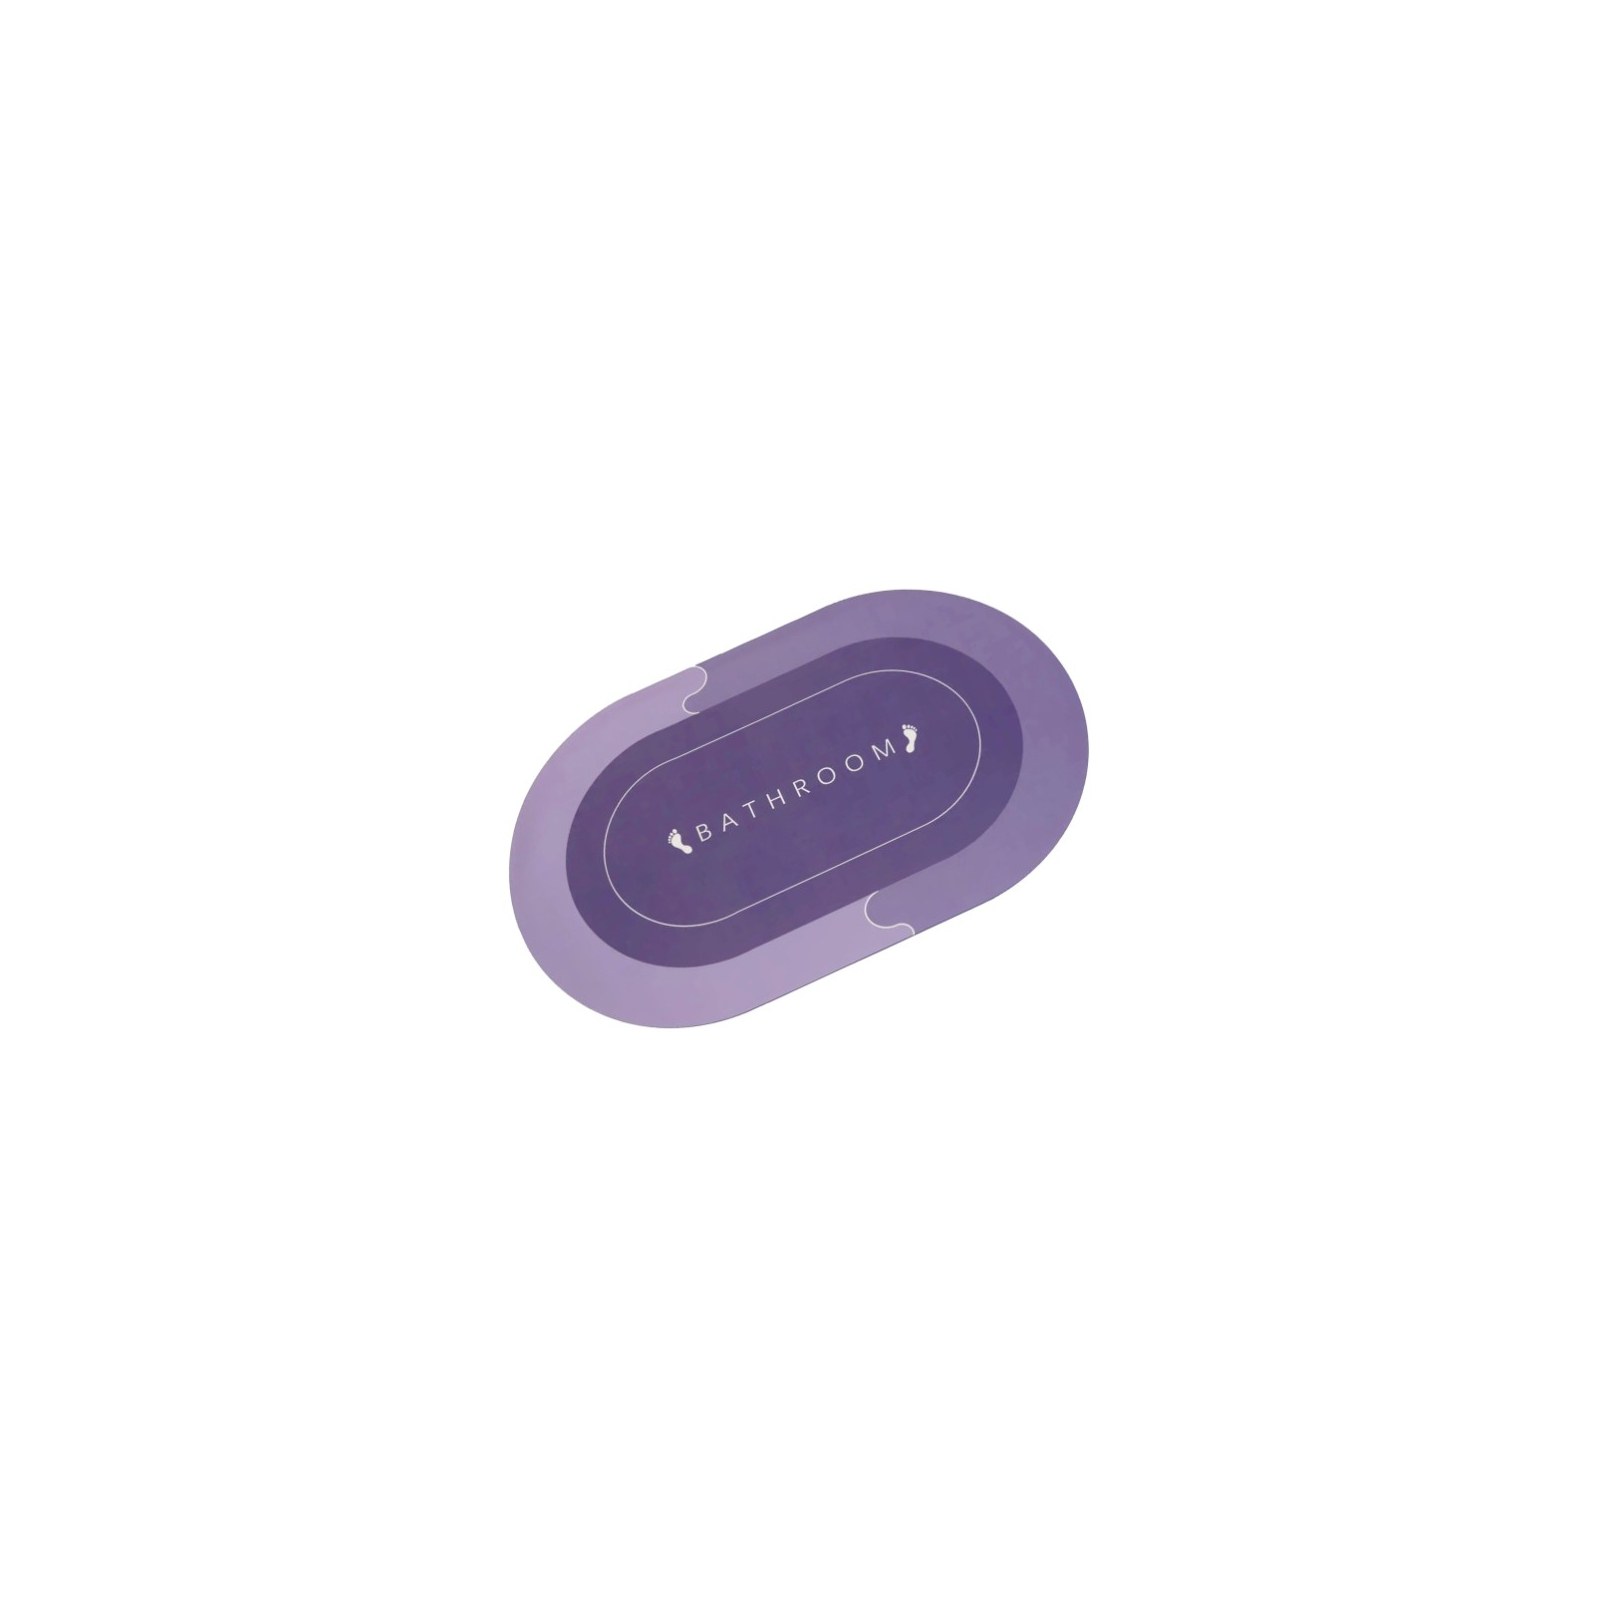 Коврик для ванной Stenson суперпоглощающий 50 х 80 см овальный фиолетово-синий (R30940 violet-blue)